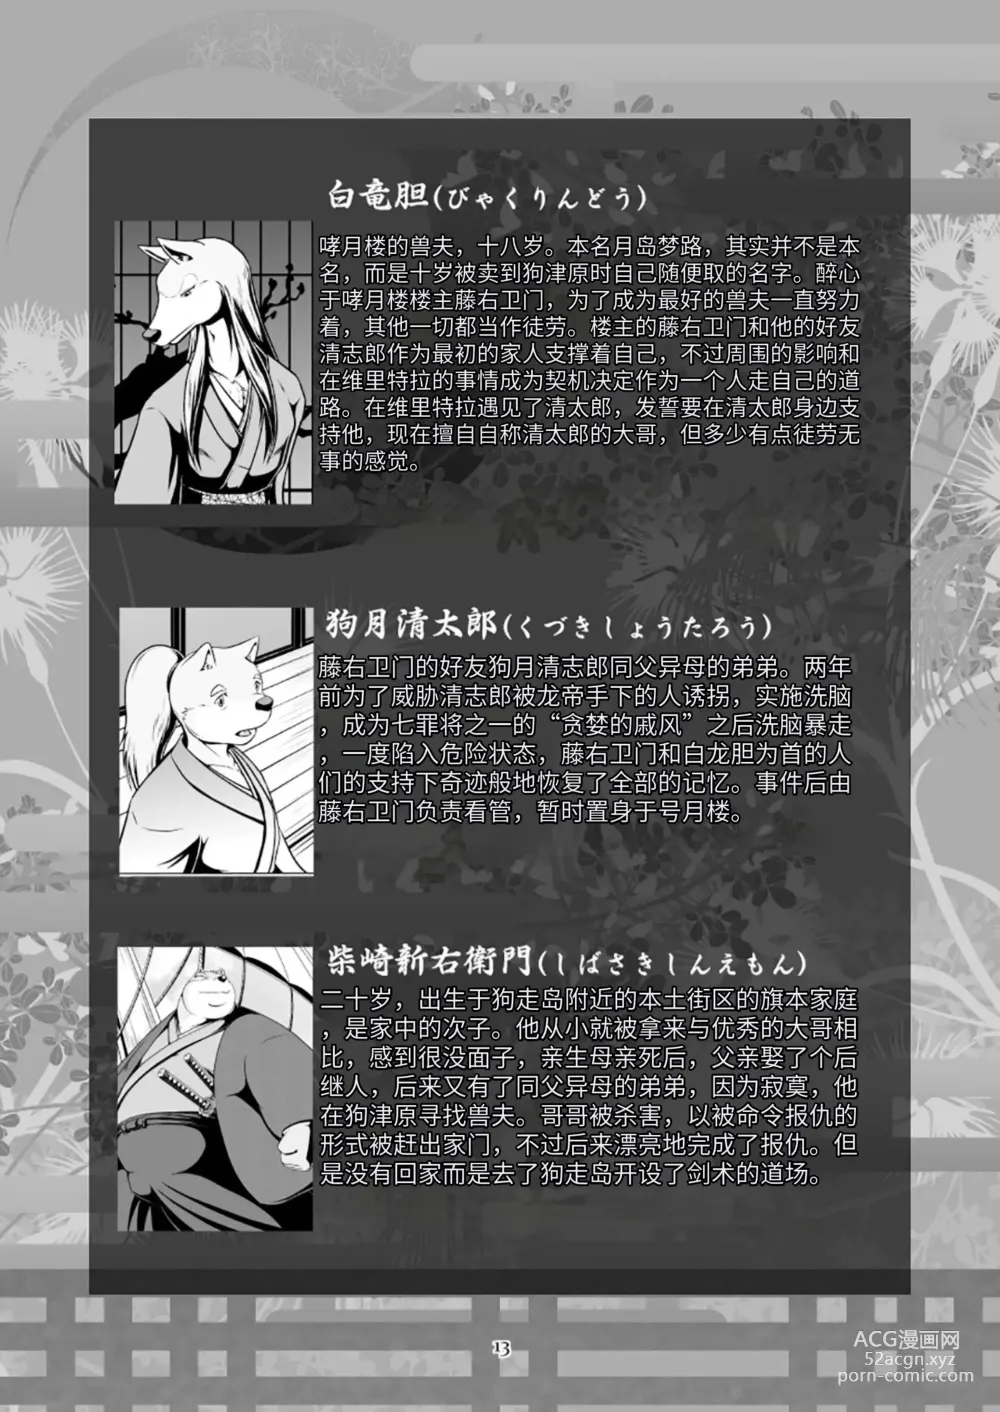 Page 13 of doujinshi 狗津原细见